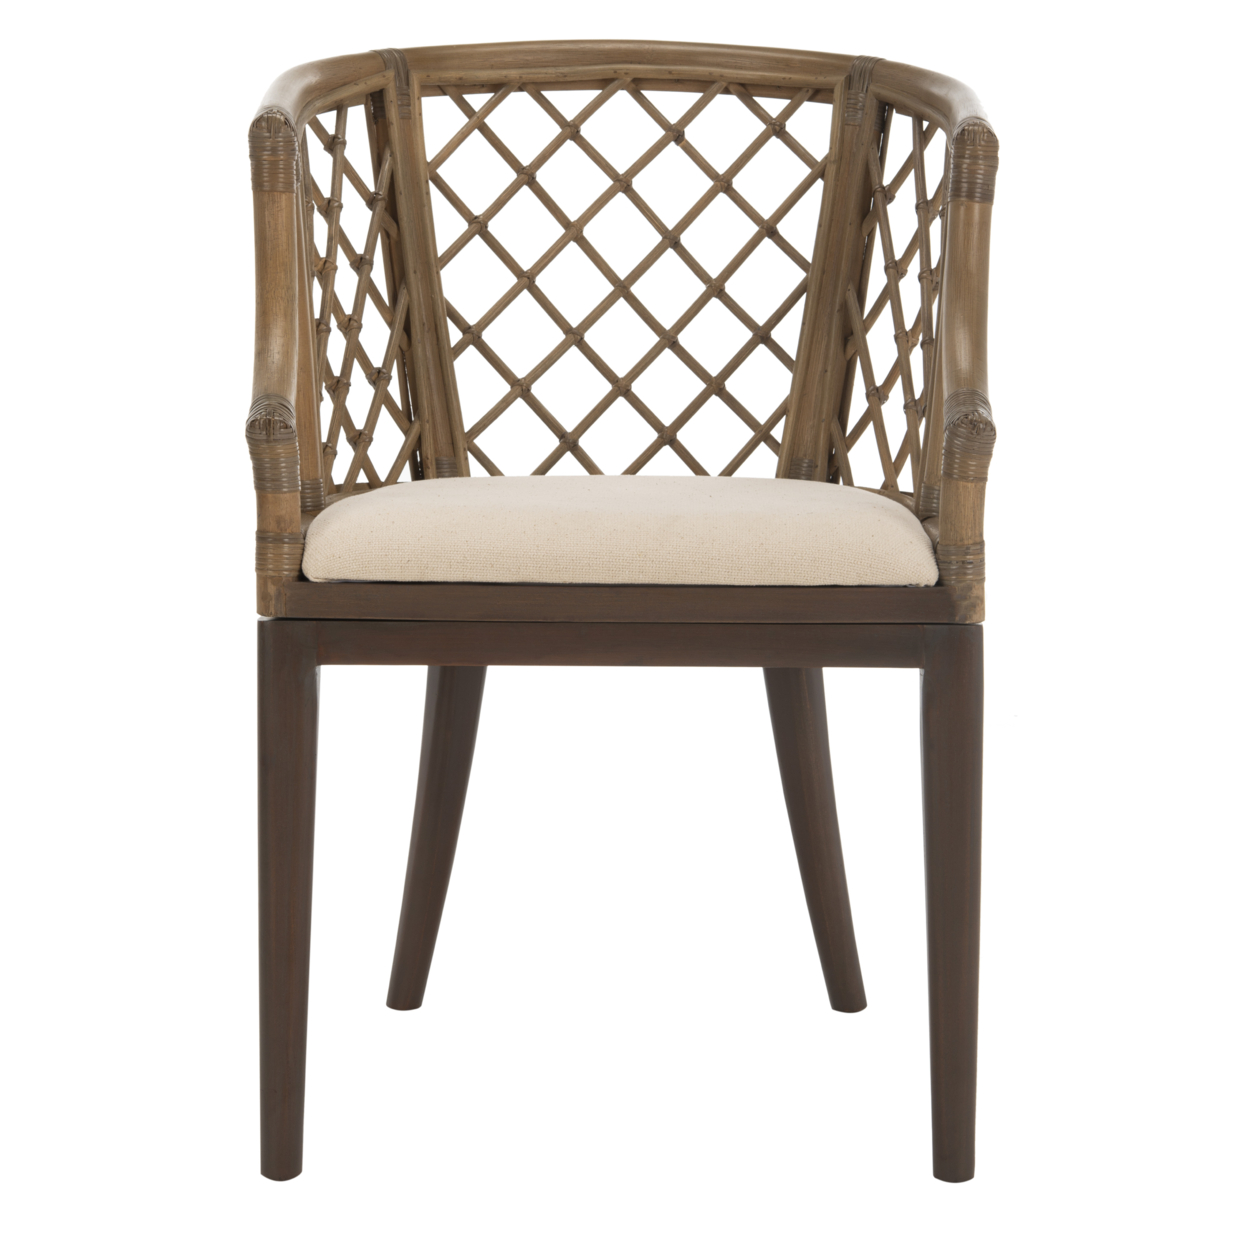 SAFAVIEH Carlotta Arm Chair Greige / White